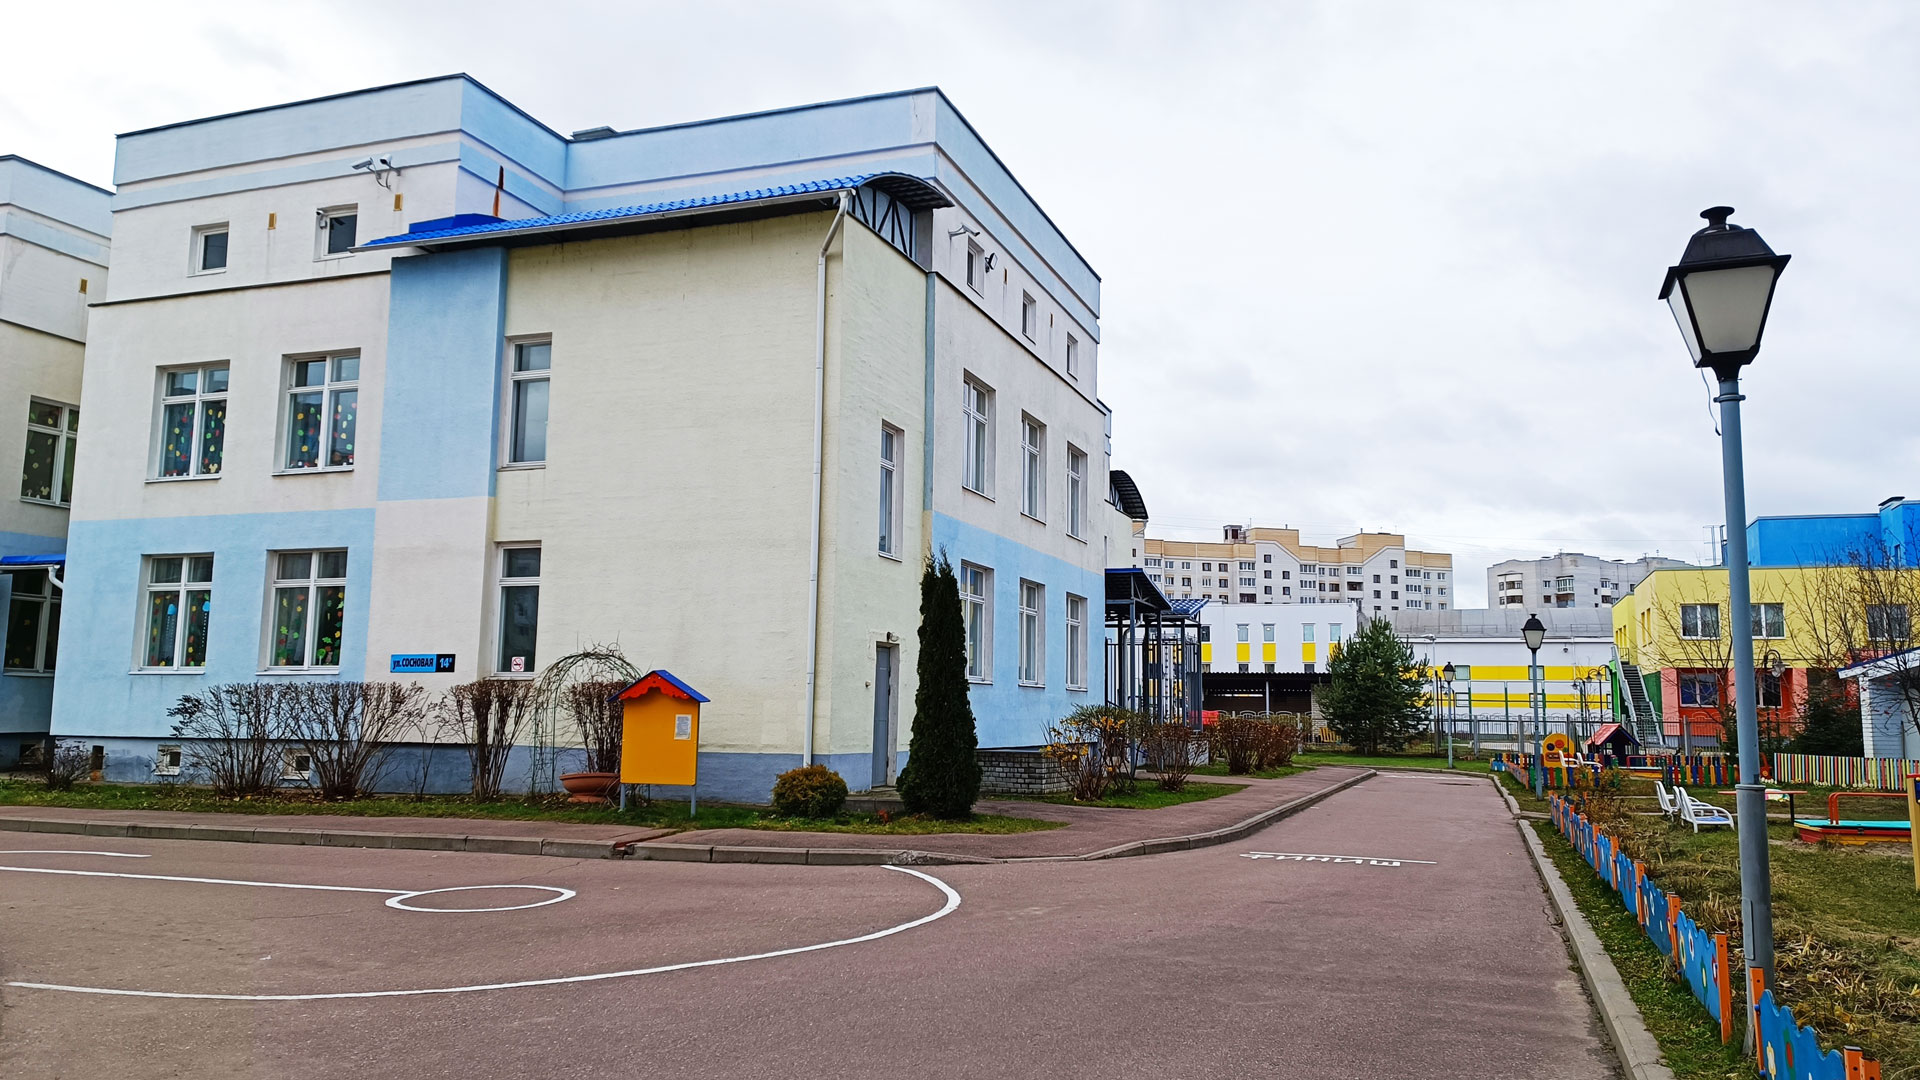 Детский сад 100 Ярославль: общий вид здания.